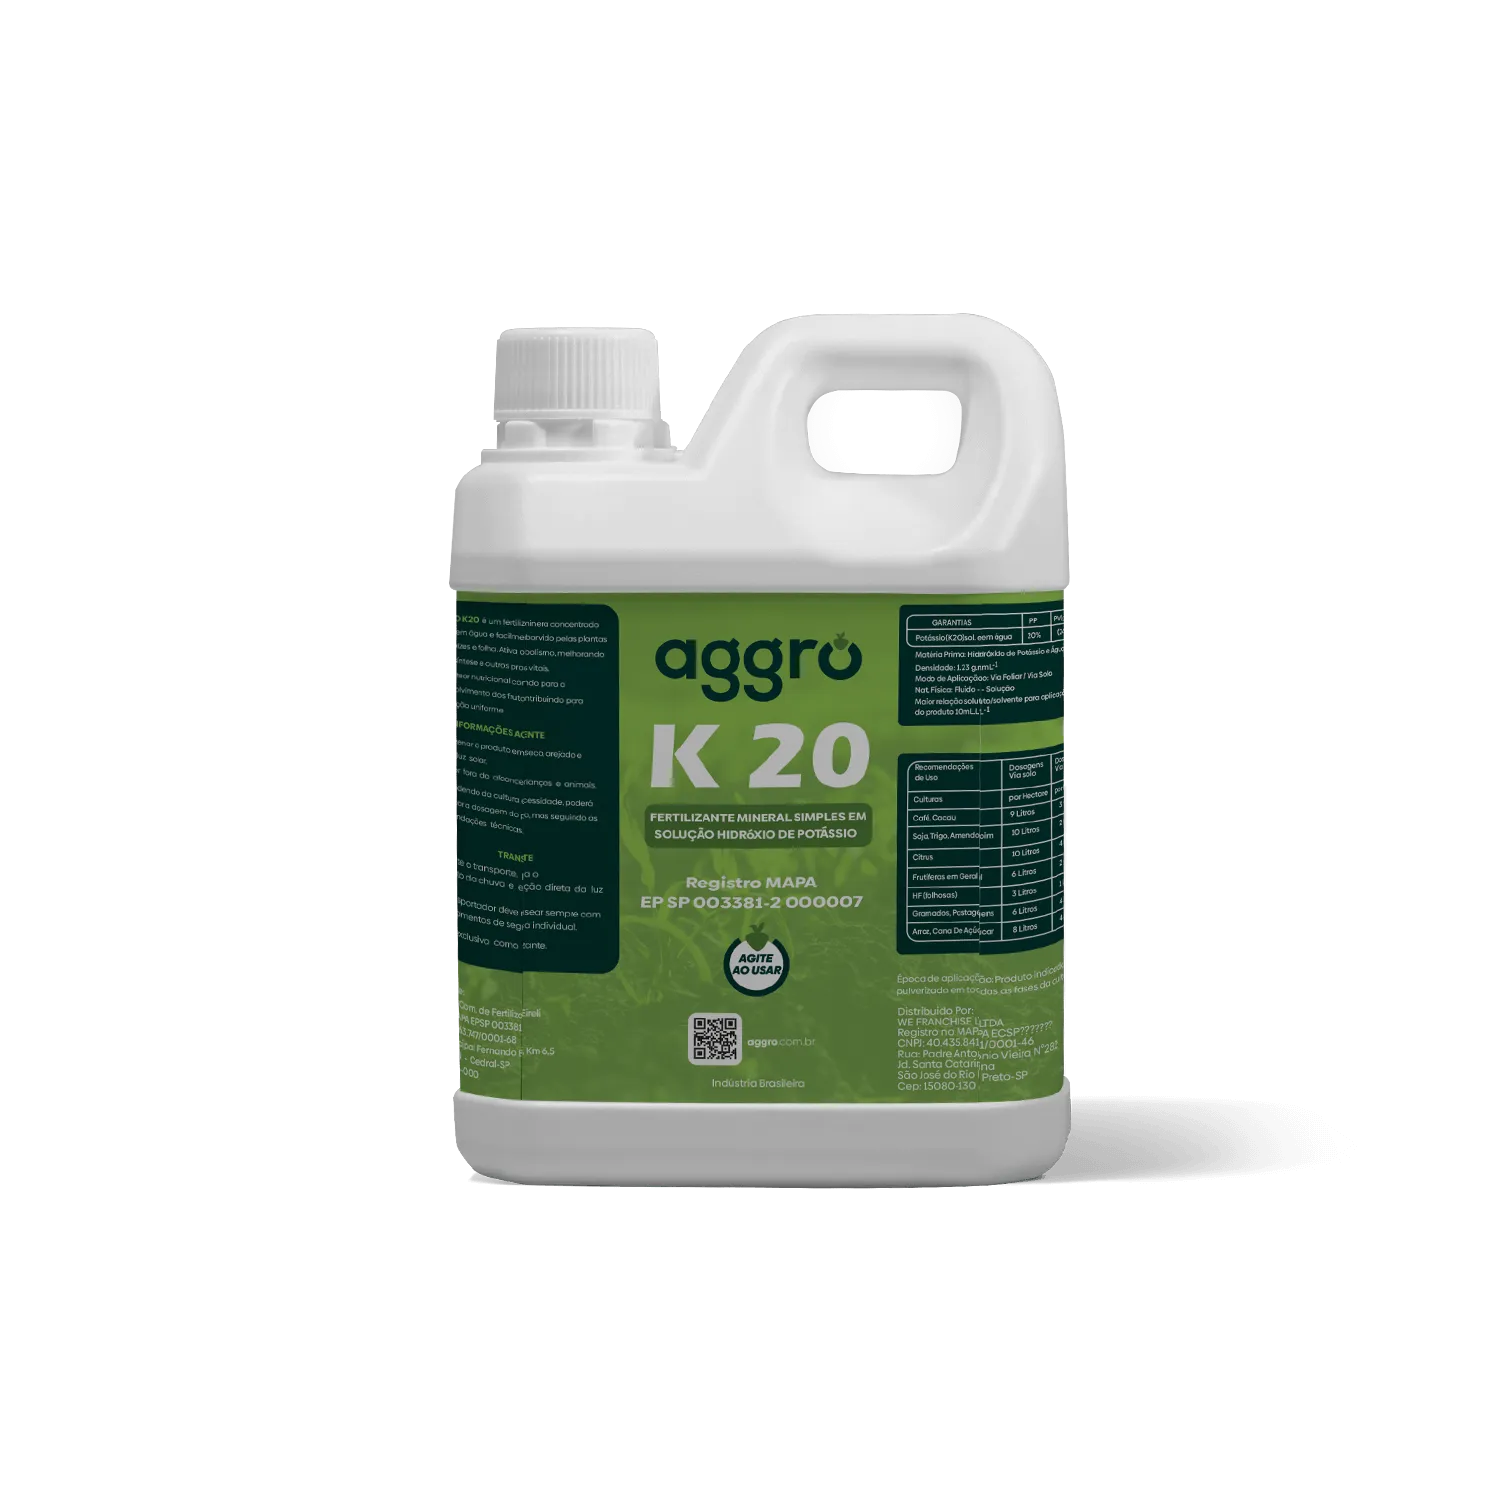 K20 Fertilizante Mineral Simples em Solução Hidróxido de Potássio – 5 Litros